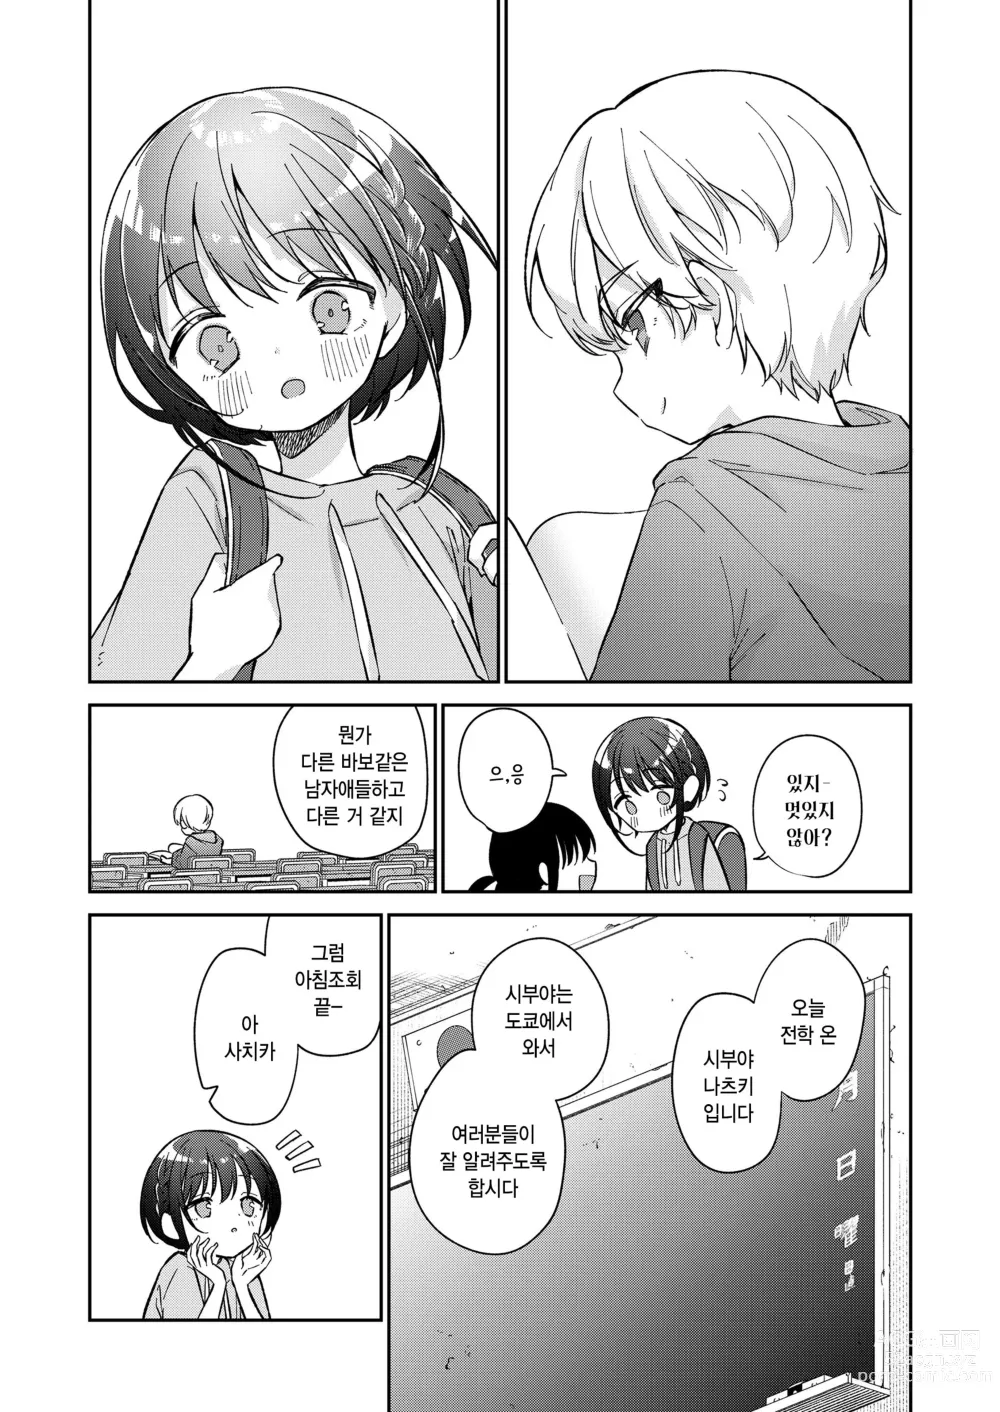 Page 5 of manga Watashi ga iki wo shiteru basho